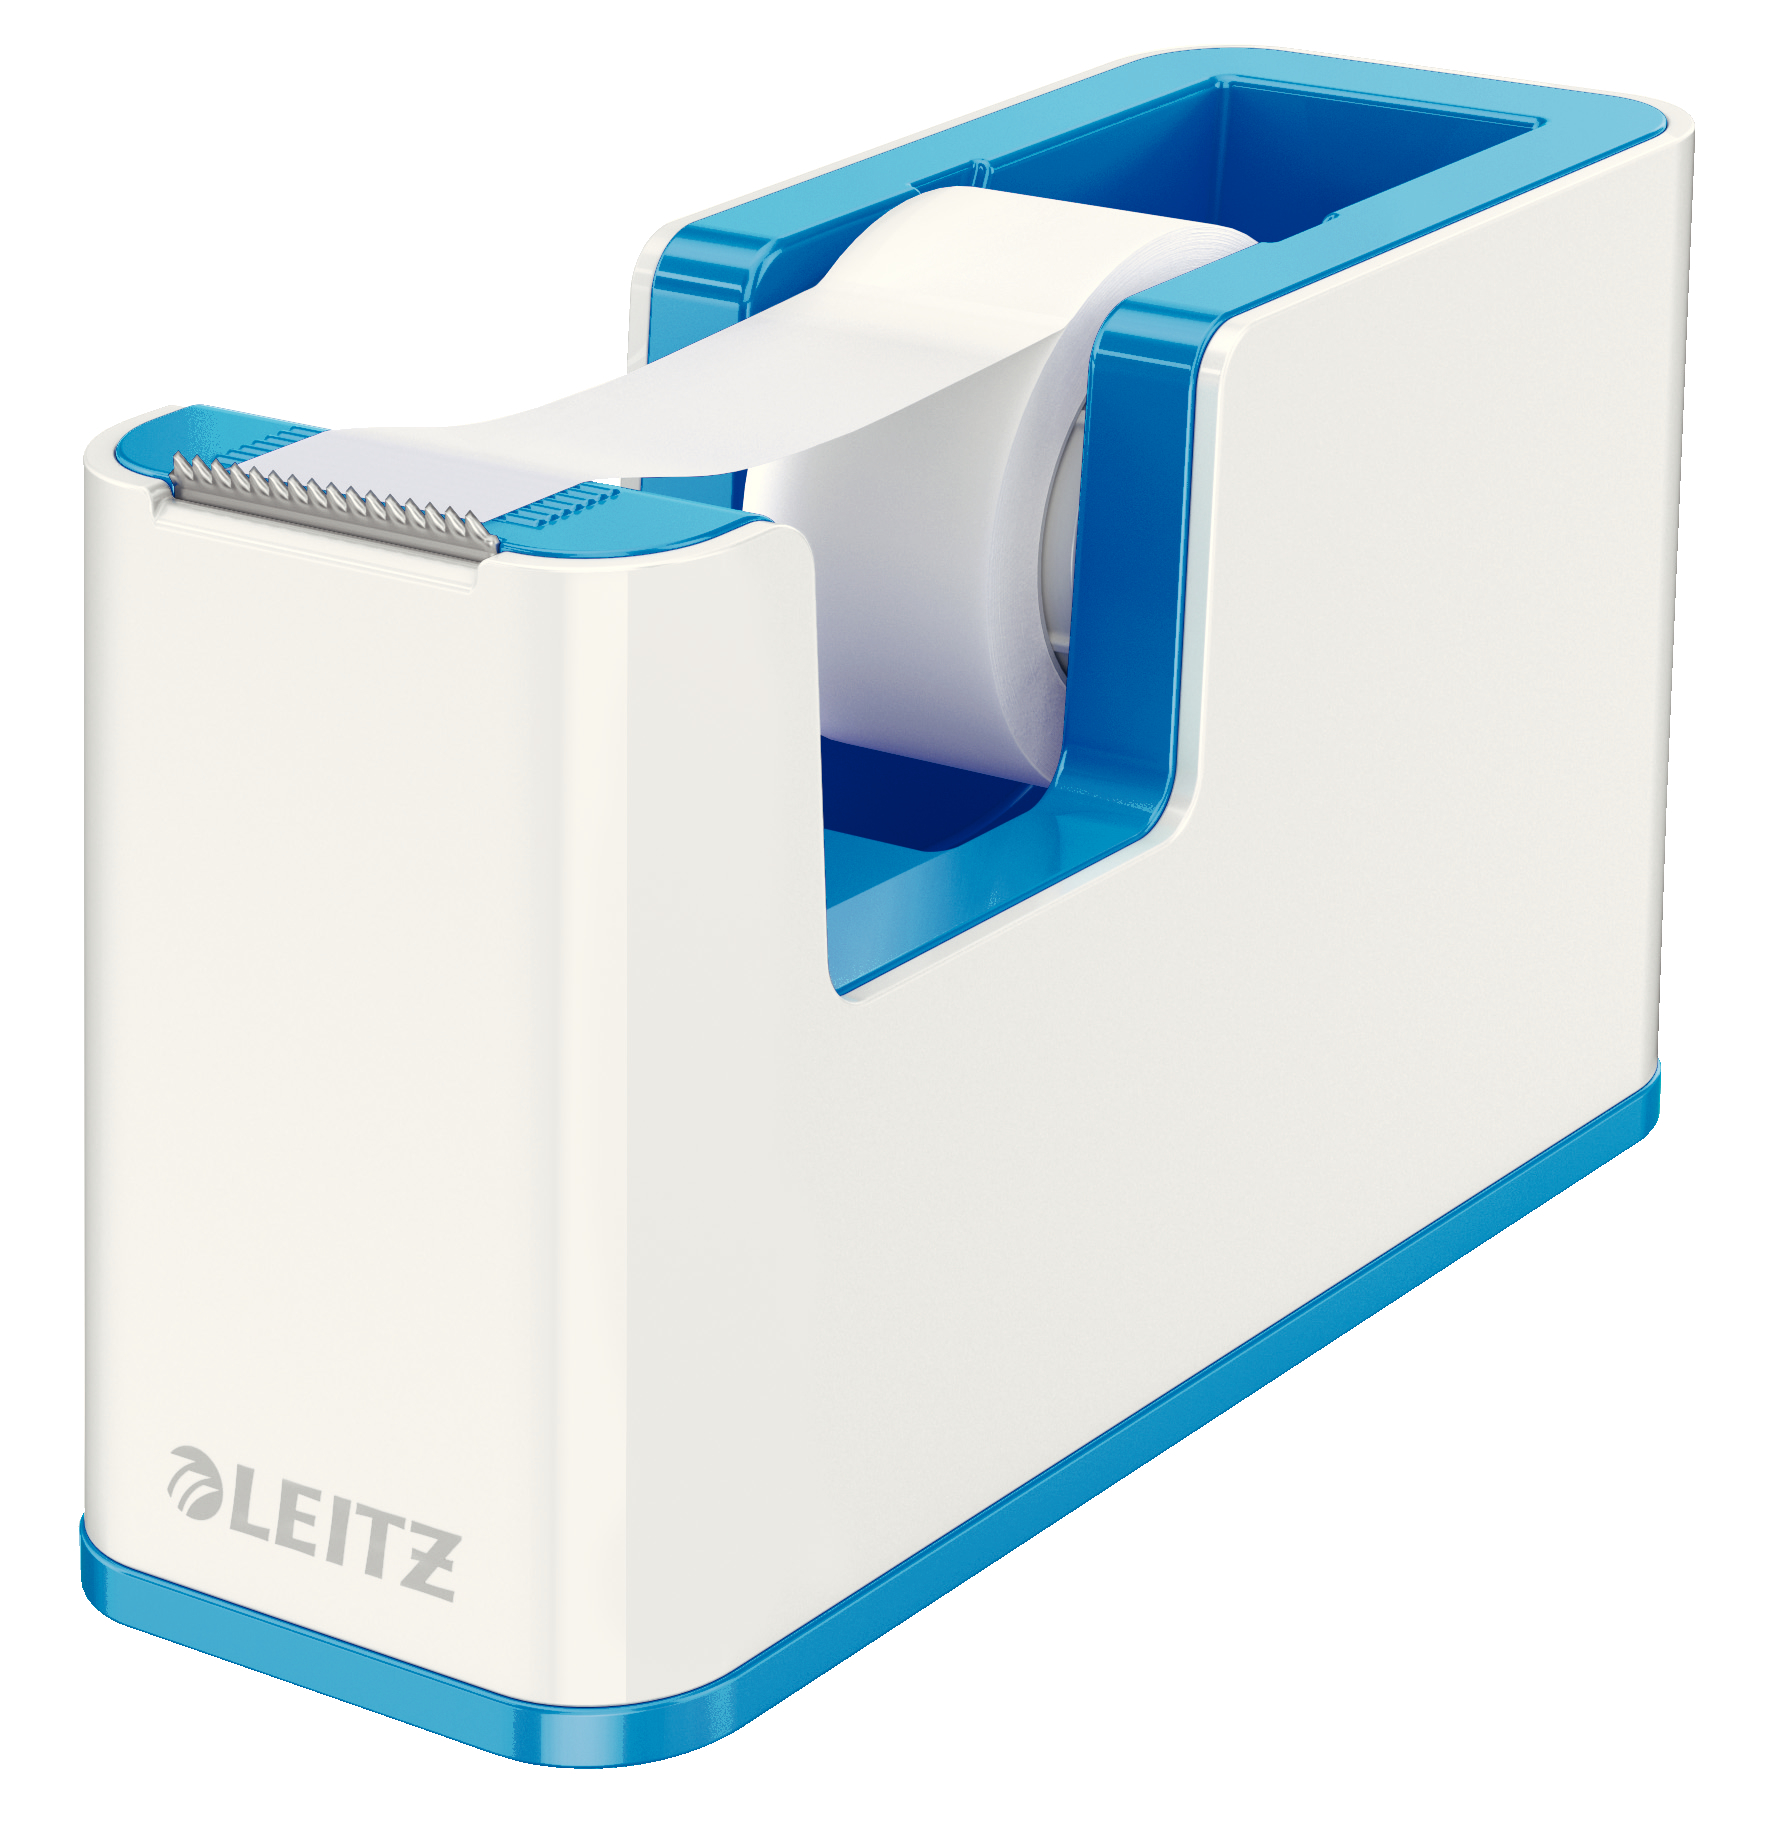 LEITZ Tape Dispenser WOW 19mmx33m 53641036 blanc/bleu